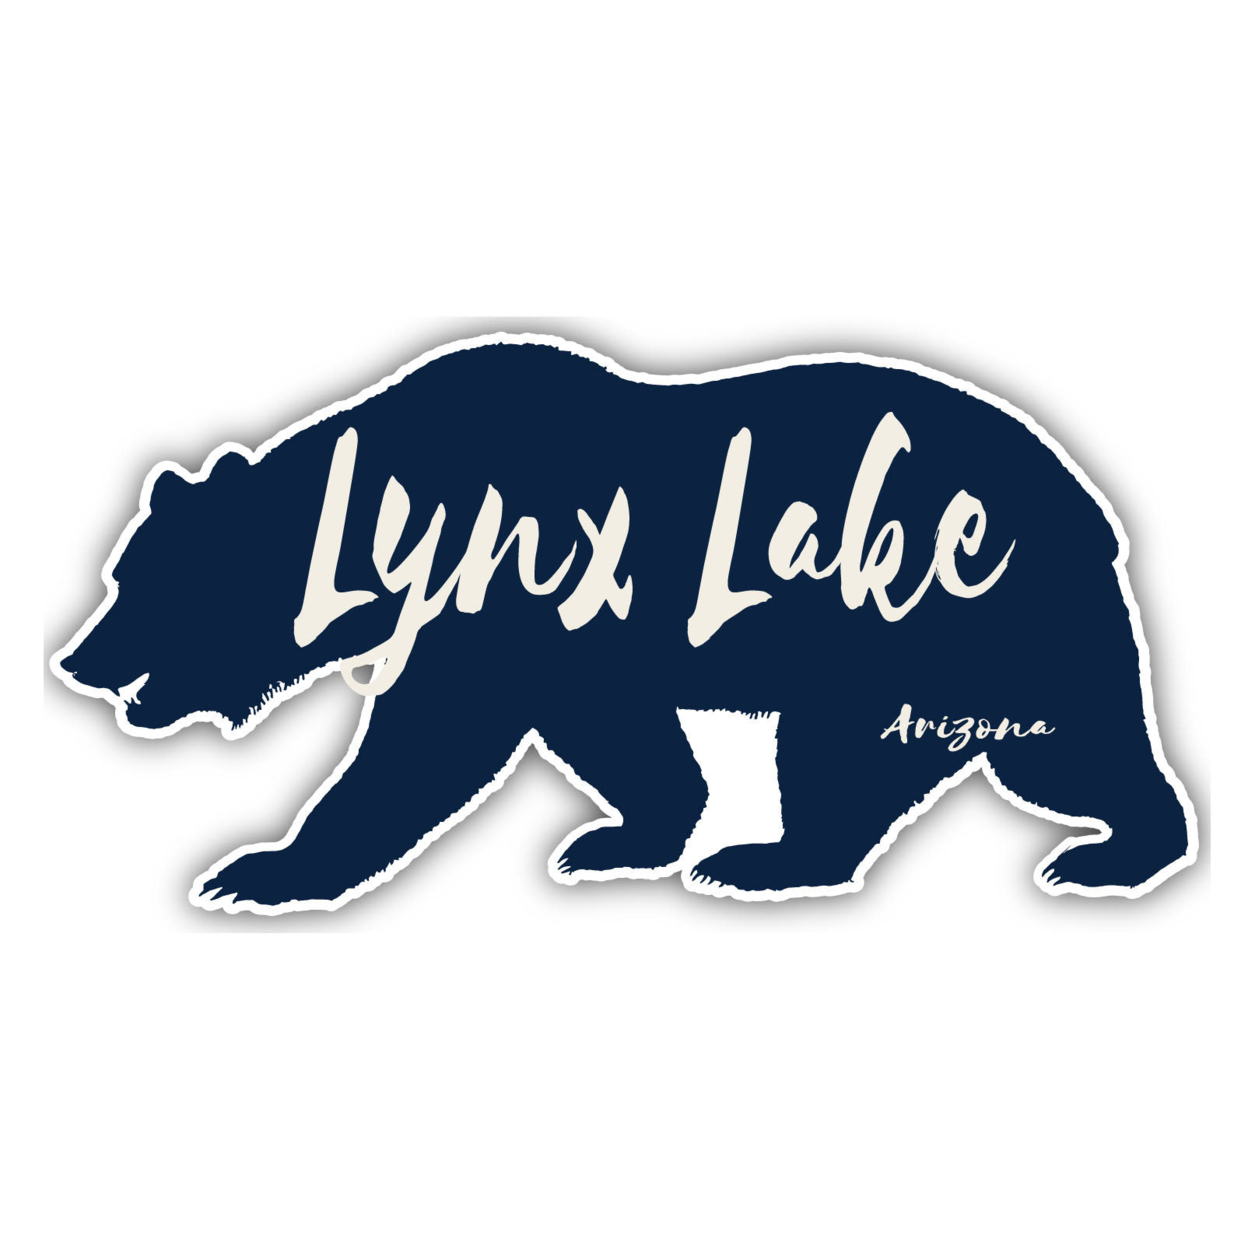 Lynx Lake Arizona Souvenir Decorative Stickers (Choose Theme And Size) - 4-Inch, Bear